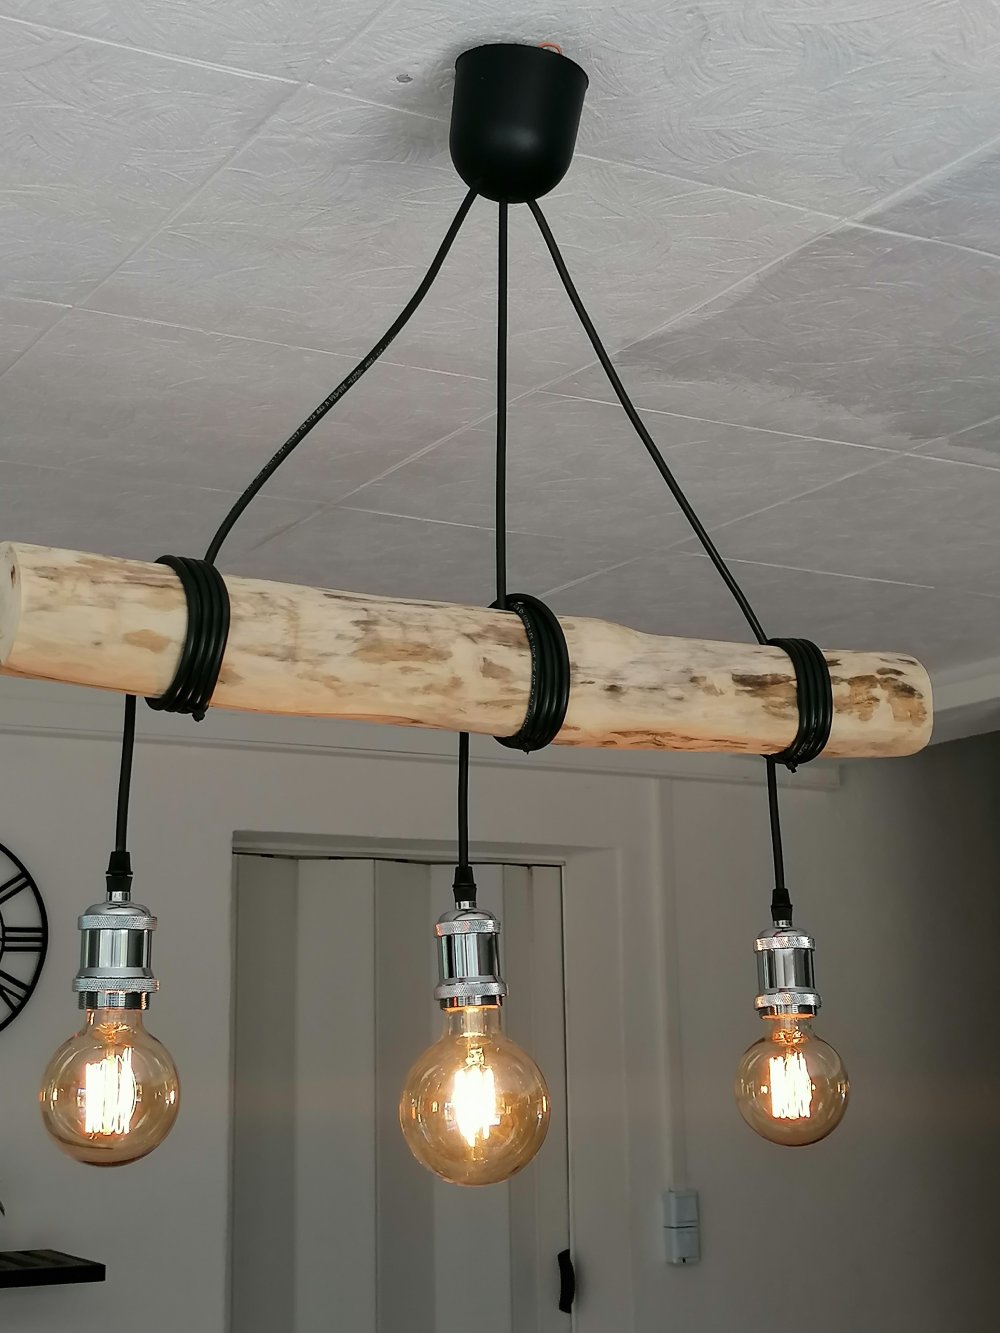 Lustre nature en bois flotté, suspension luminaire en bois flotté ,lampe  suspendue contemporaine - Un grand marché